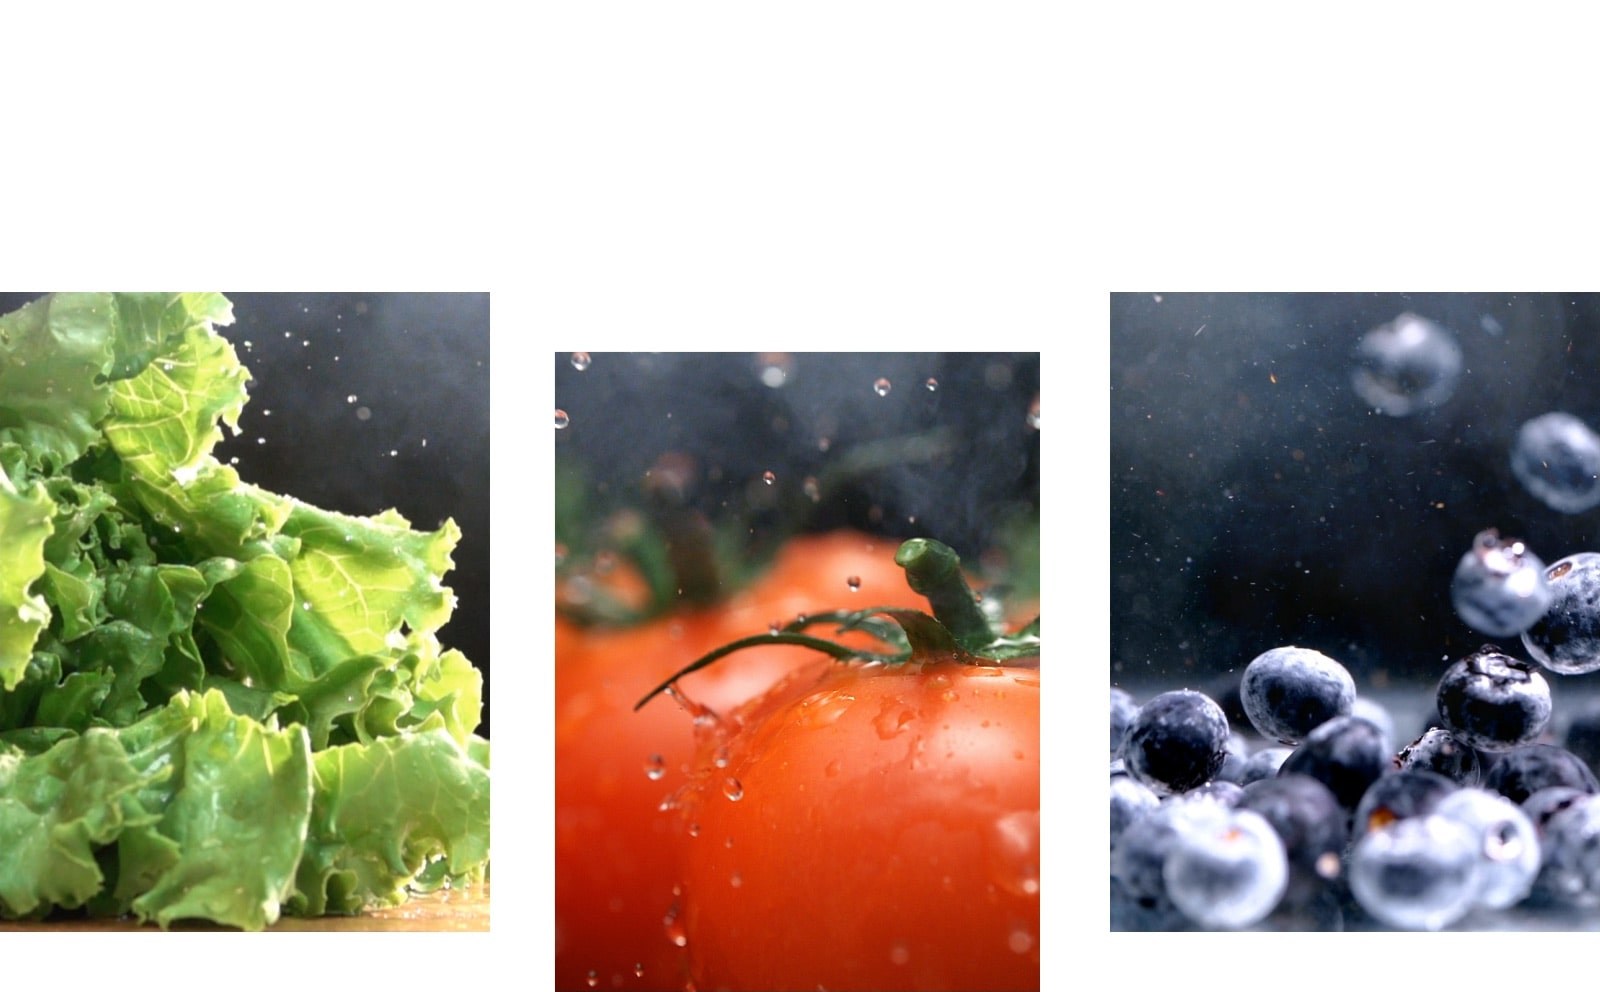 新鮮的綠色生菜的特寫影片旁是水滴落在新鮮紅番茄上的特寫影片，一旁是生鮮藍莓四處移動的影片。